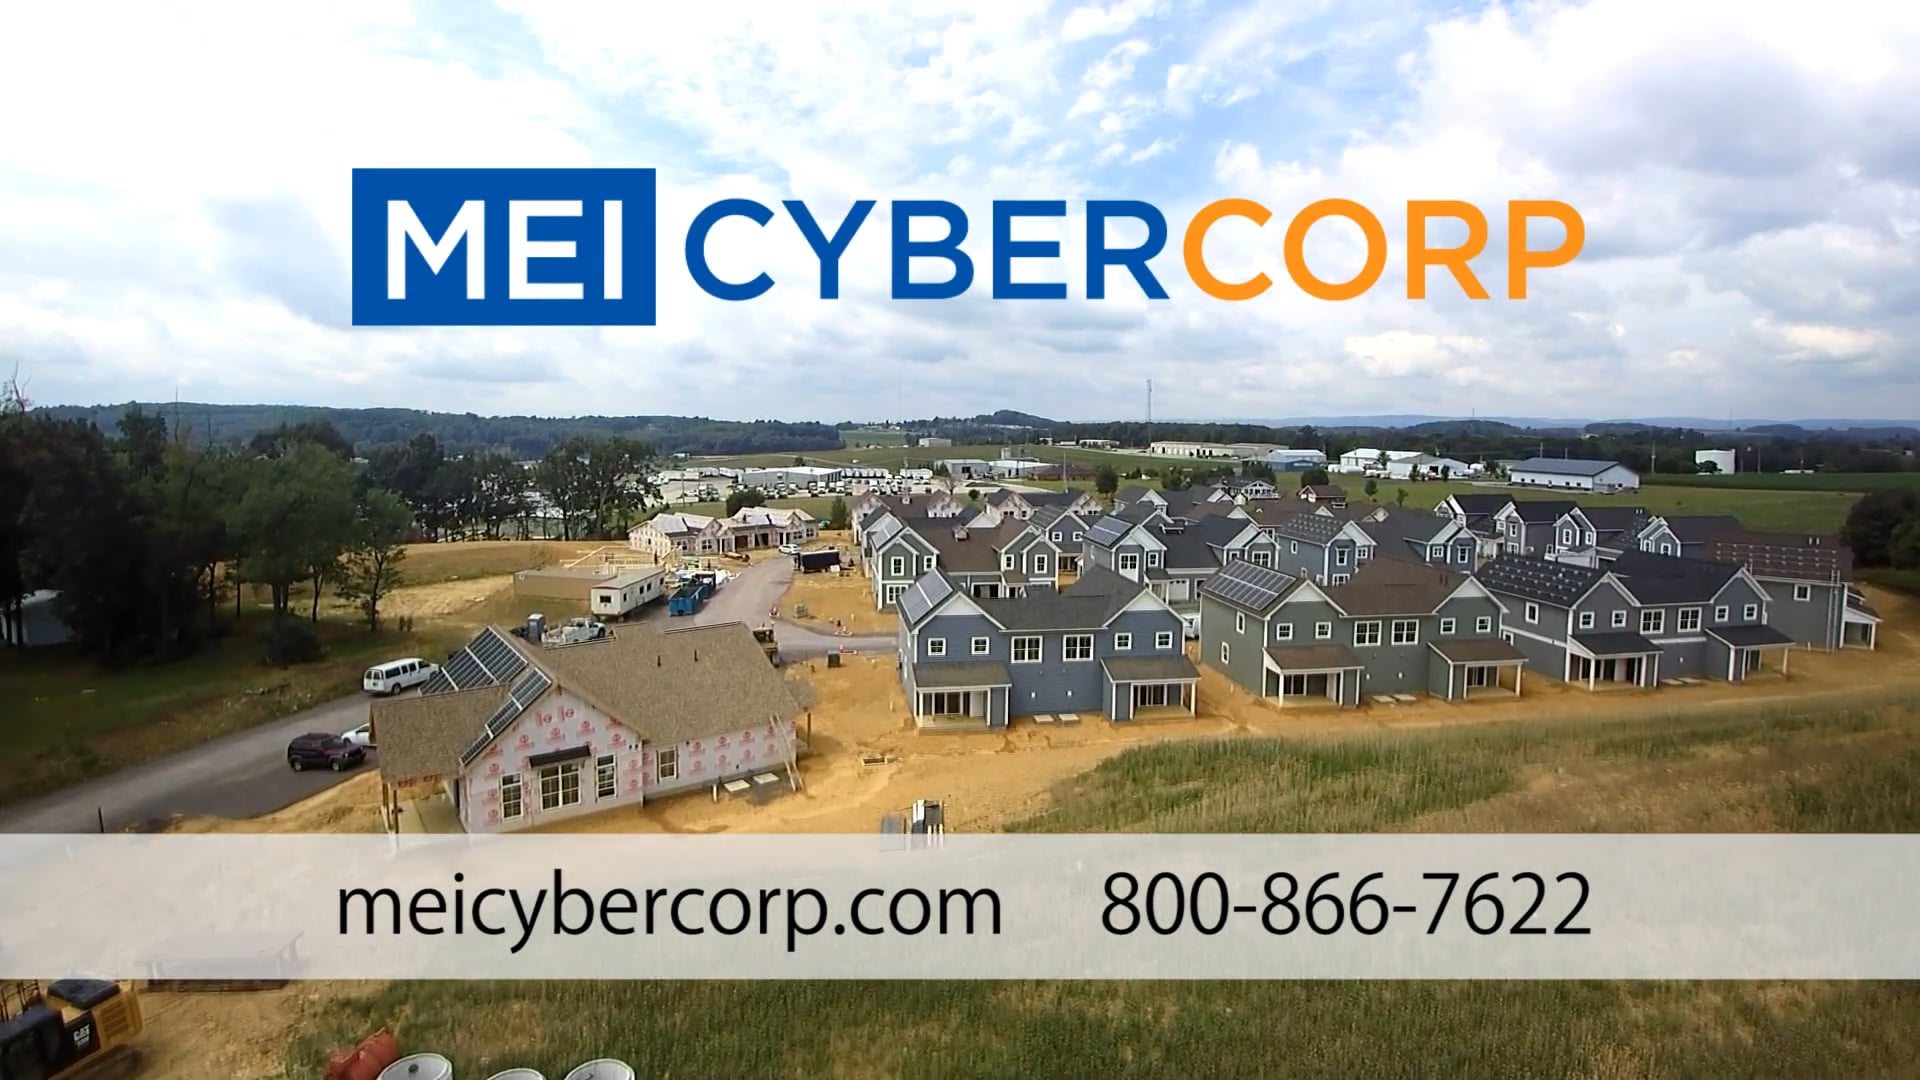 MEI Cyber Corp